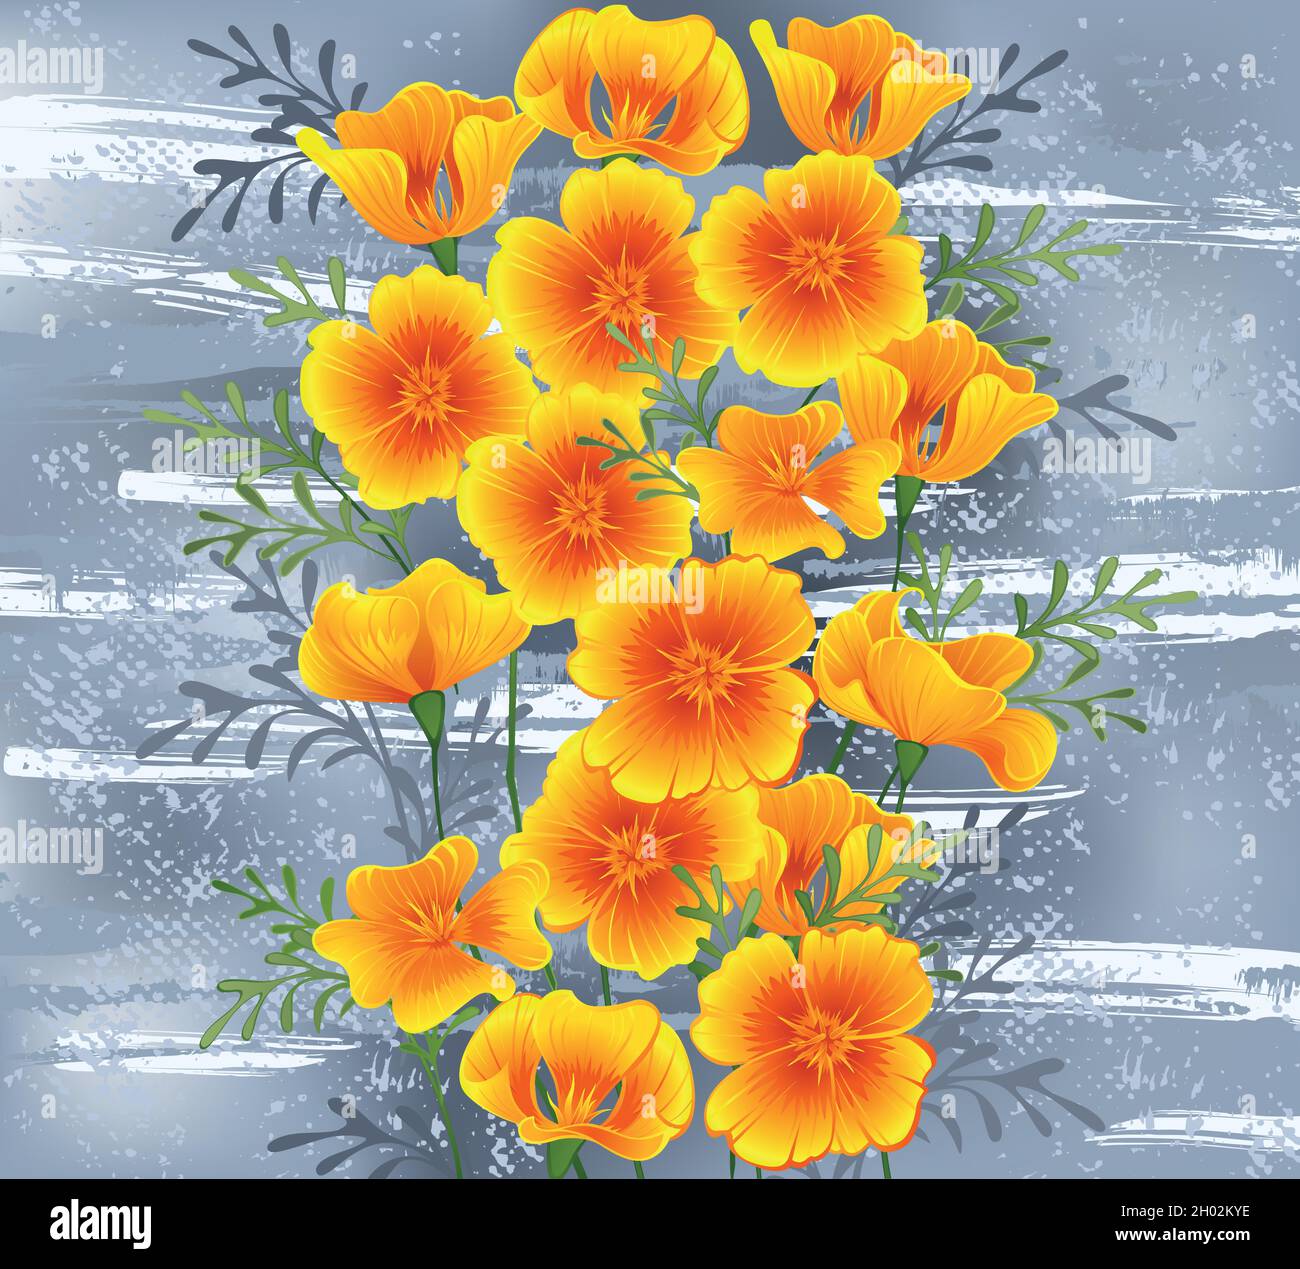 Blumen in Orange, kalifornischer Mohn auf grauem, strukturiertem Hintergrund, übermalt mit Streifen weißer Farbe. Stock Vektor